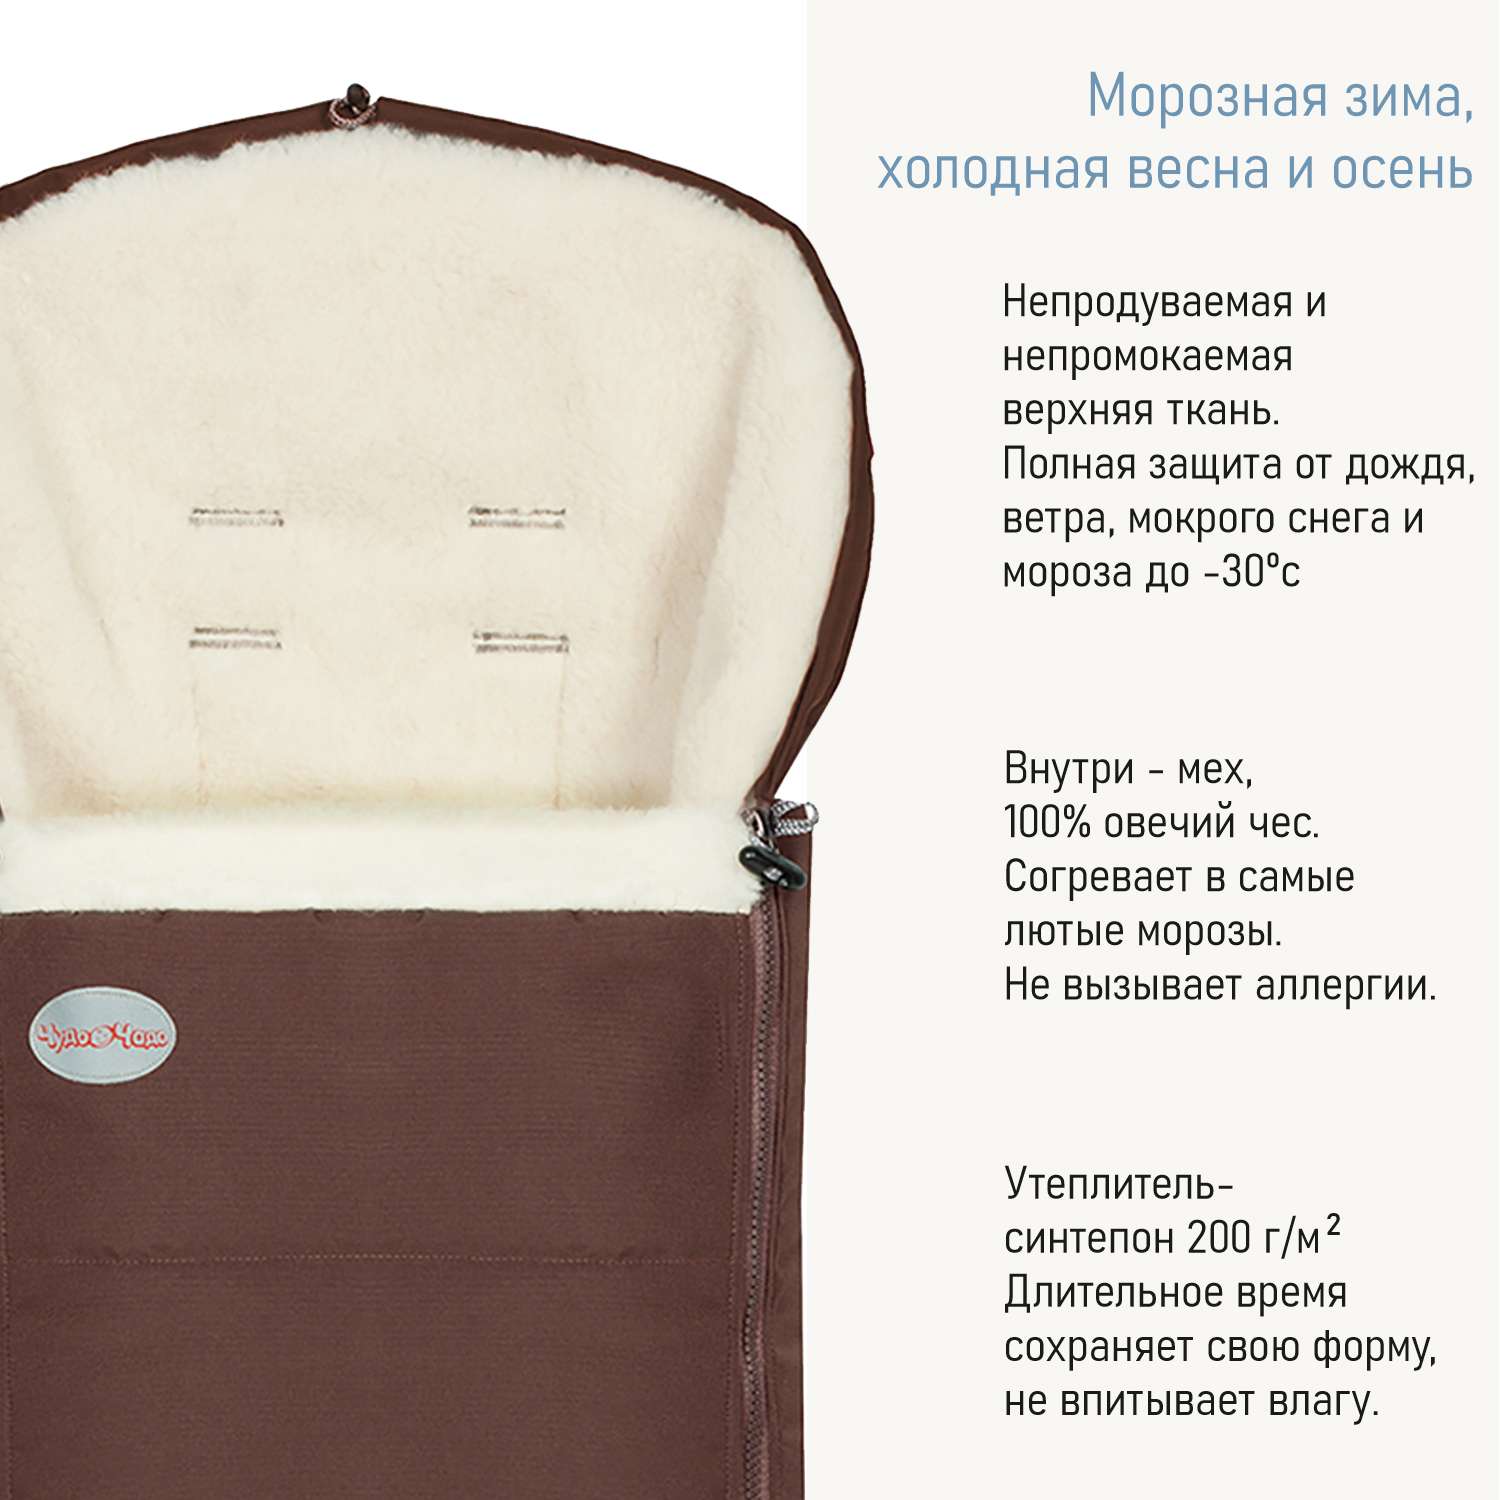 Комплект в коляску Чудо-чадо меховой конверт + муфта с оплеткой «Frost» мех шоколад КОФ09-003 - фото 4